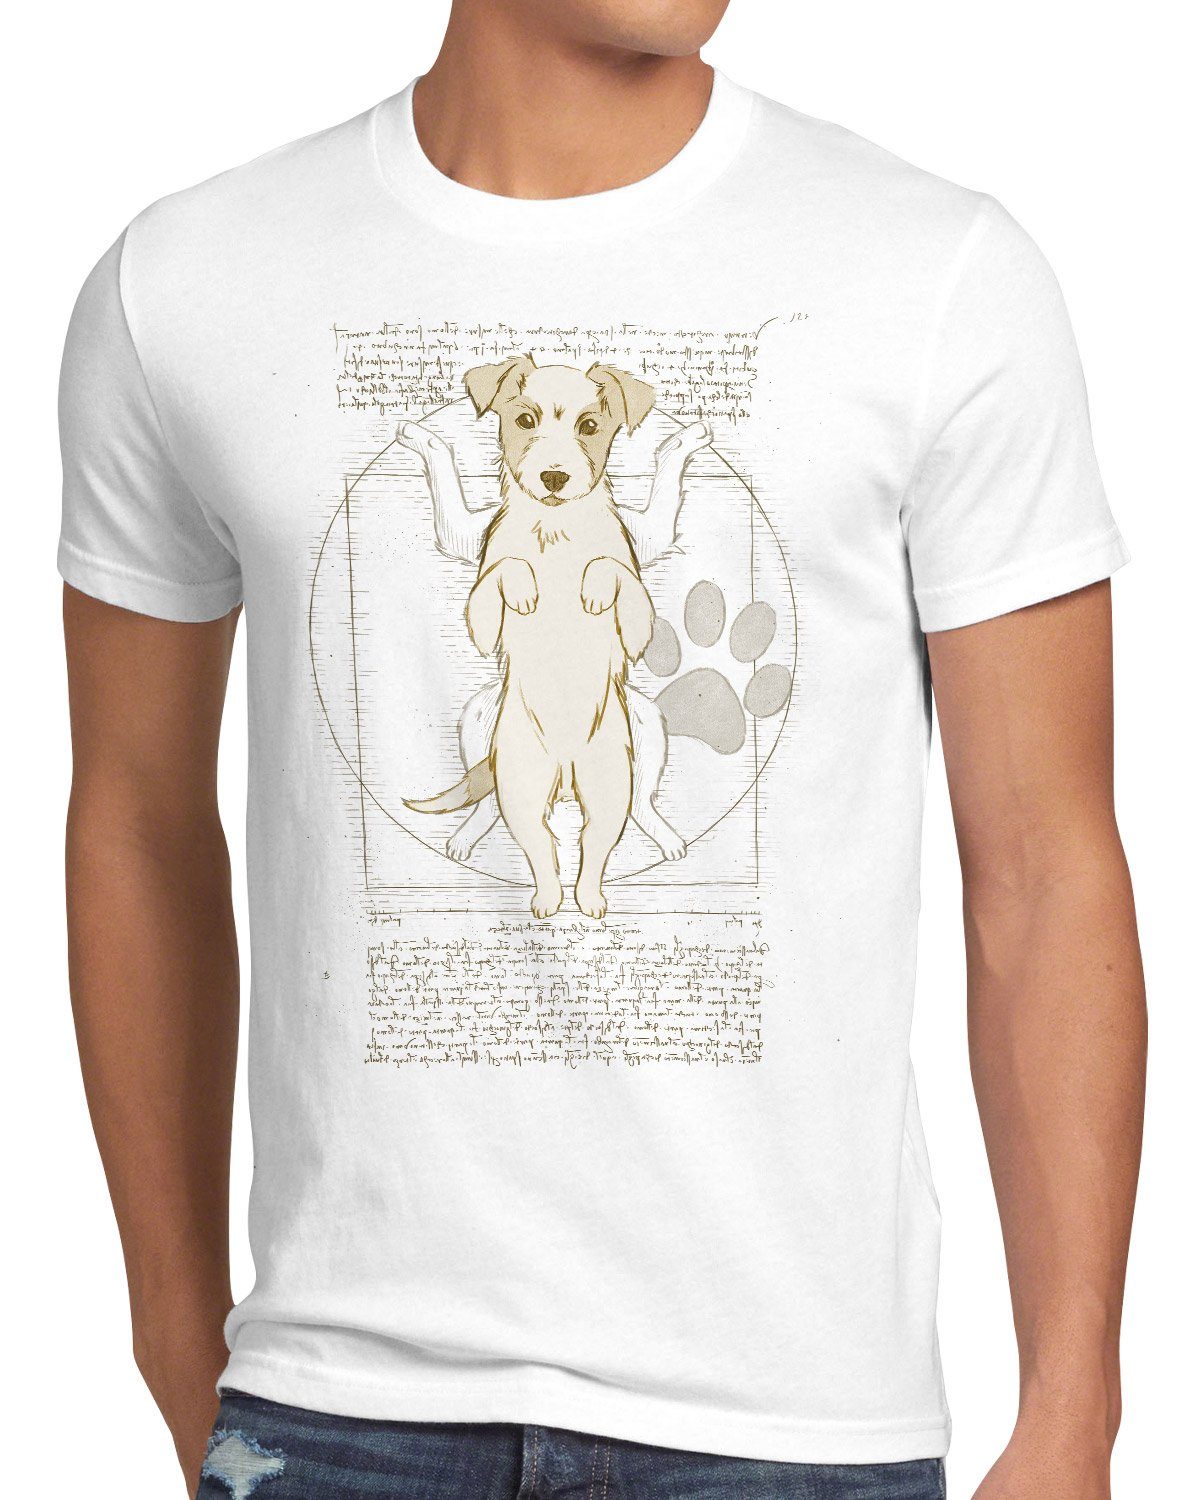 T-Shirt weiß Jack Herren Vitruvianischer terrier hund Russell Print-Shirt style3